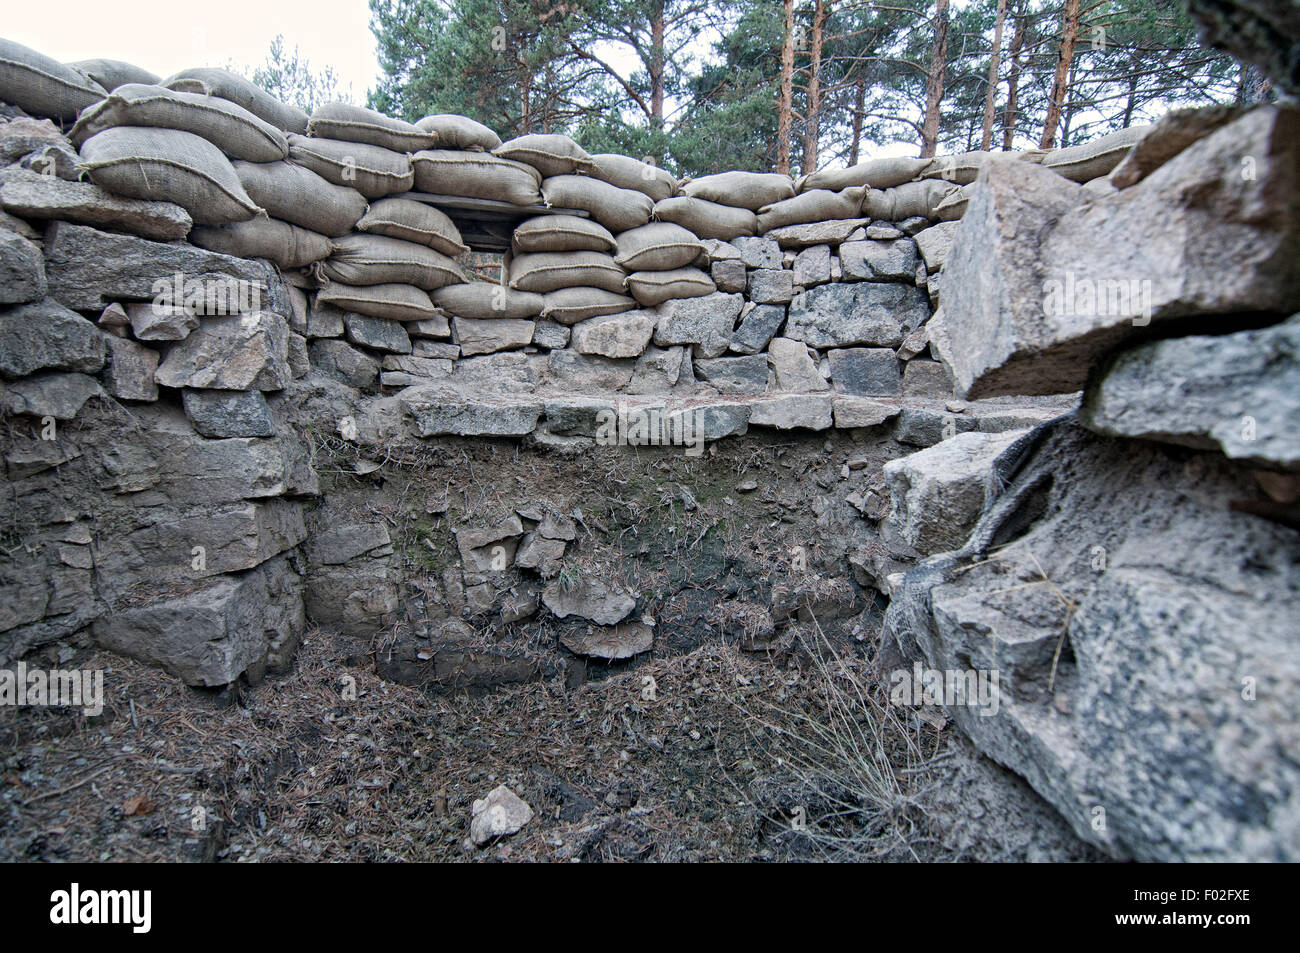 Trincee con accatastati sacchi di sabbia usata come difesa nella guerra civile spagnola a Valsain. Spagna. Foto Stock